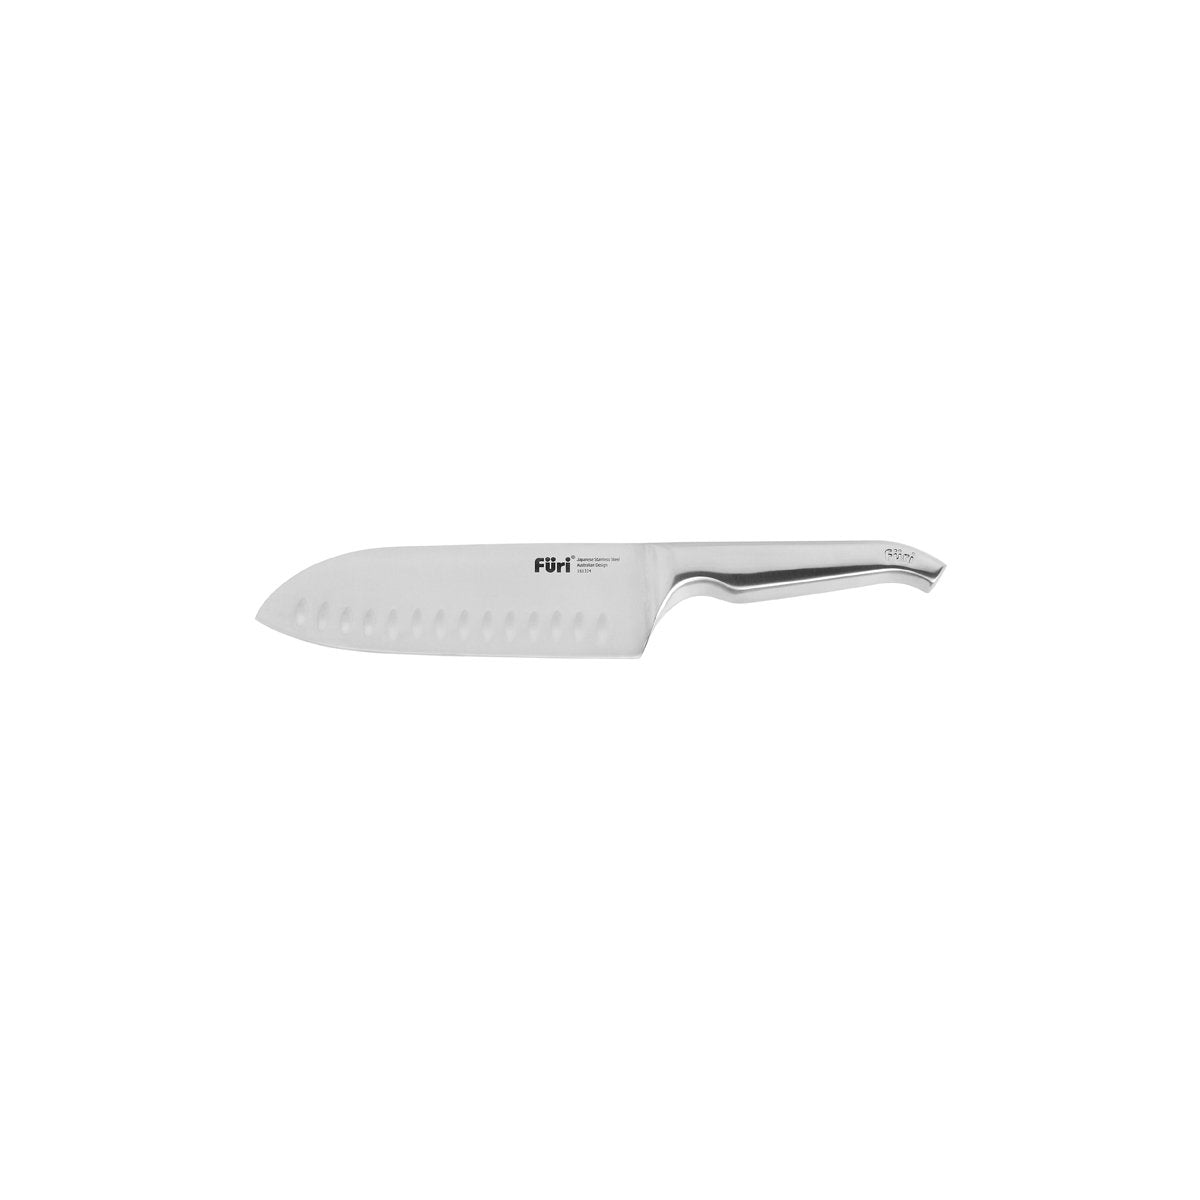 27191 Furi Pro East West Santoku Knife 170mm Tomkin Australia Hospitality Supplies